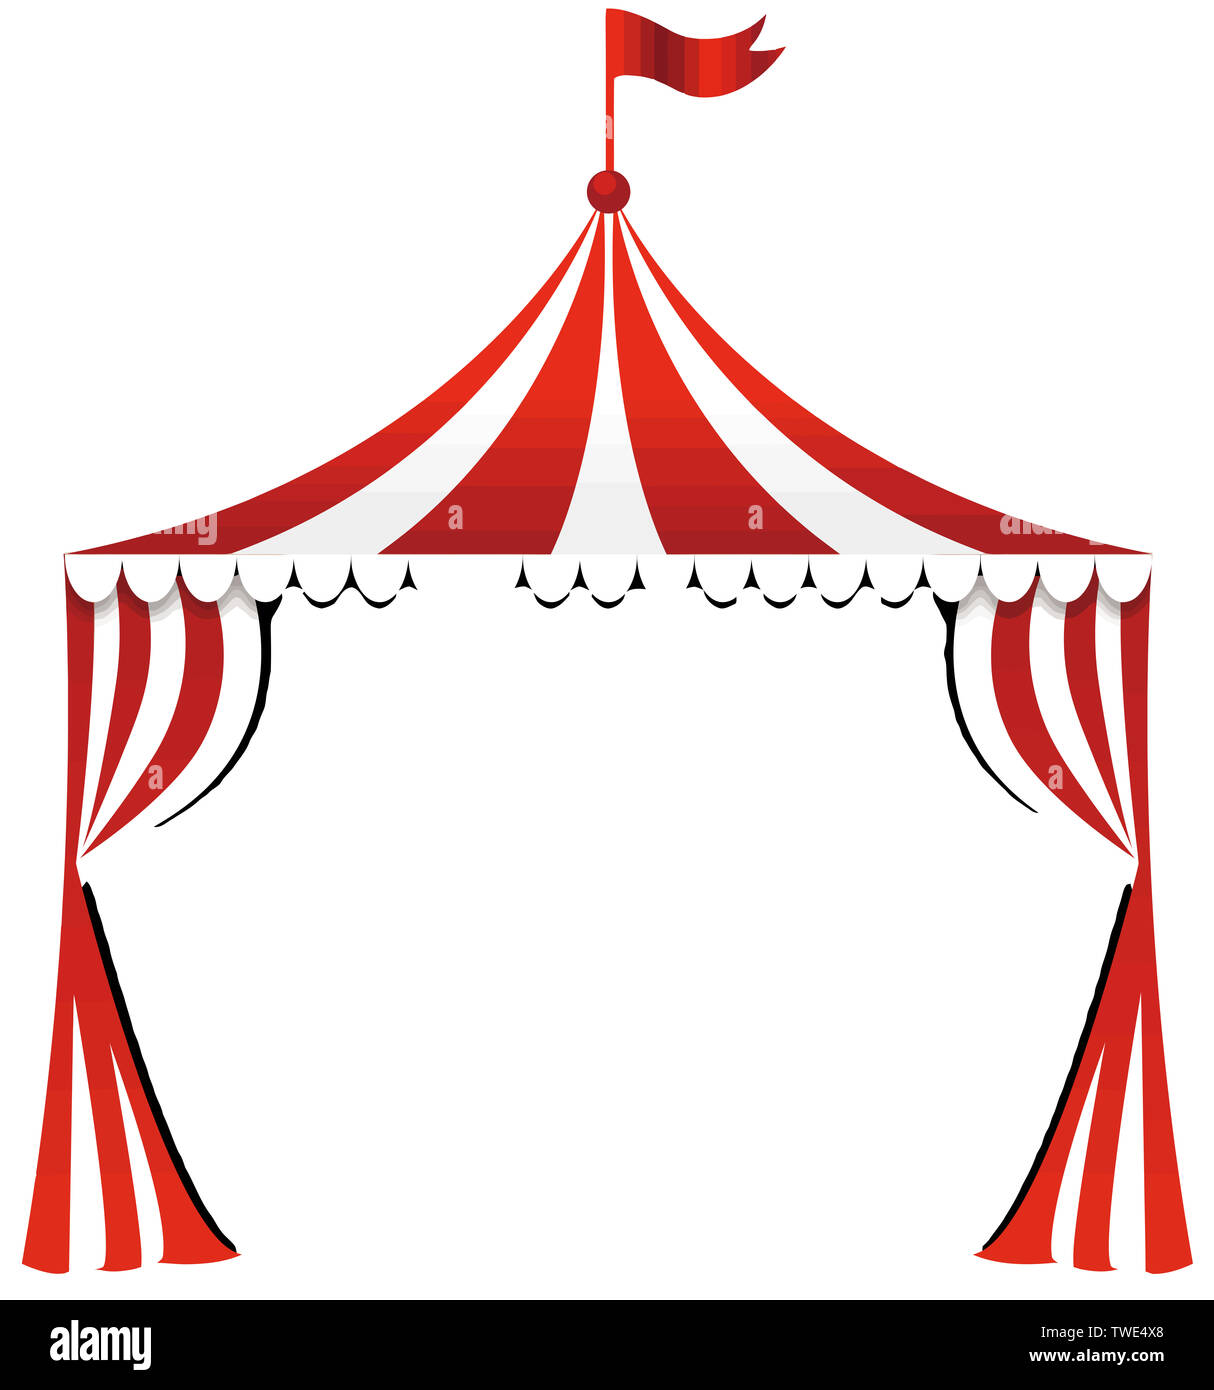 circus tent' Banque d'images détourées - Alamy